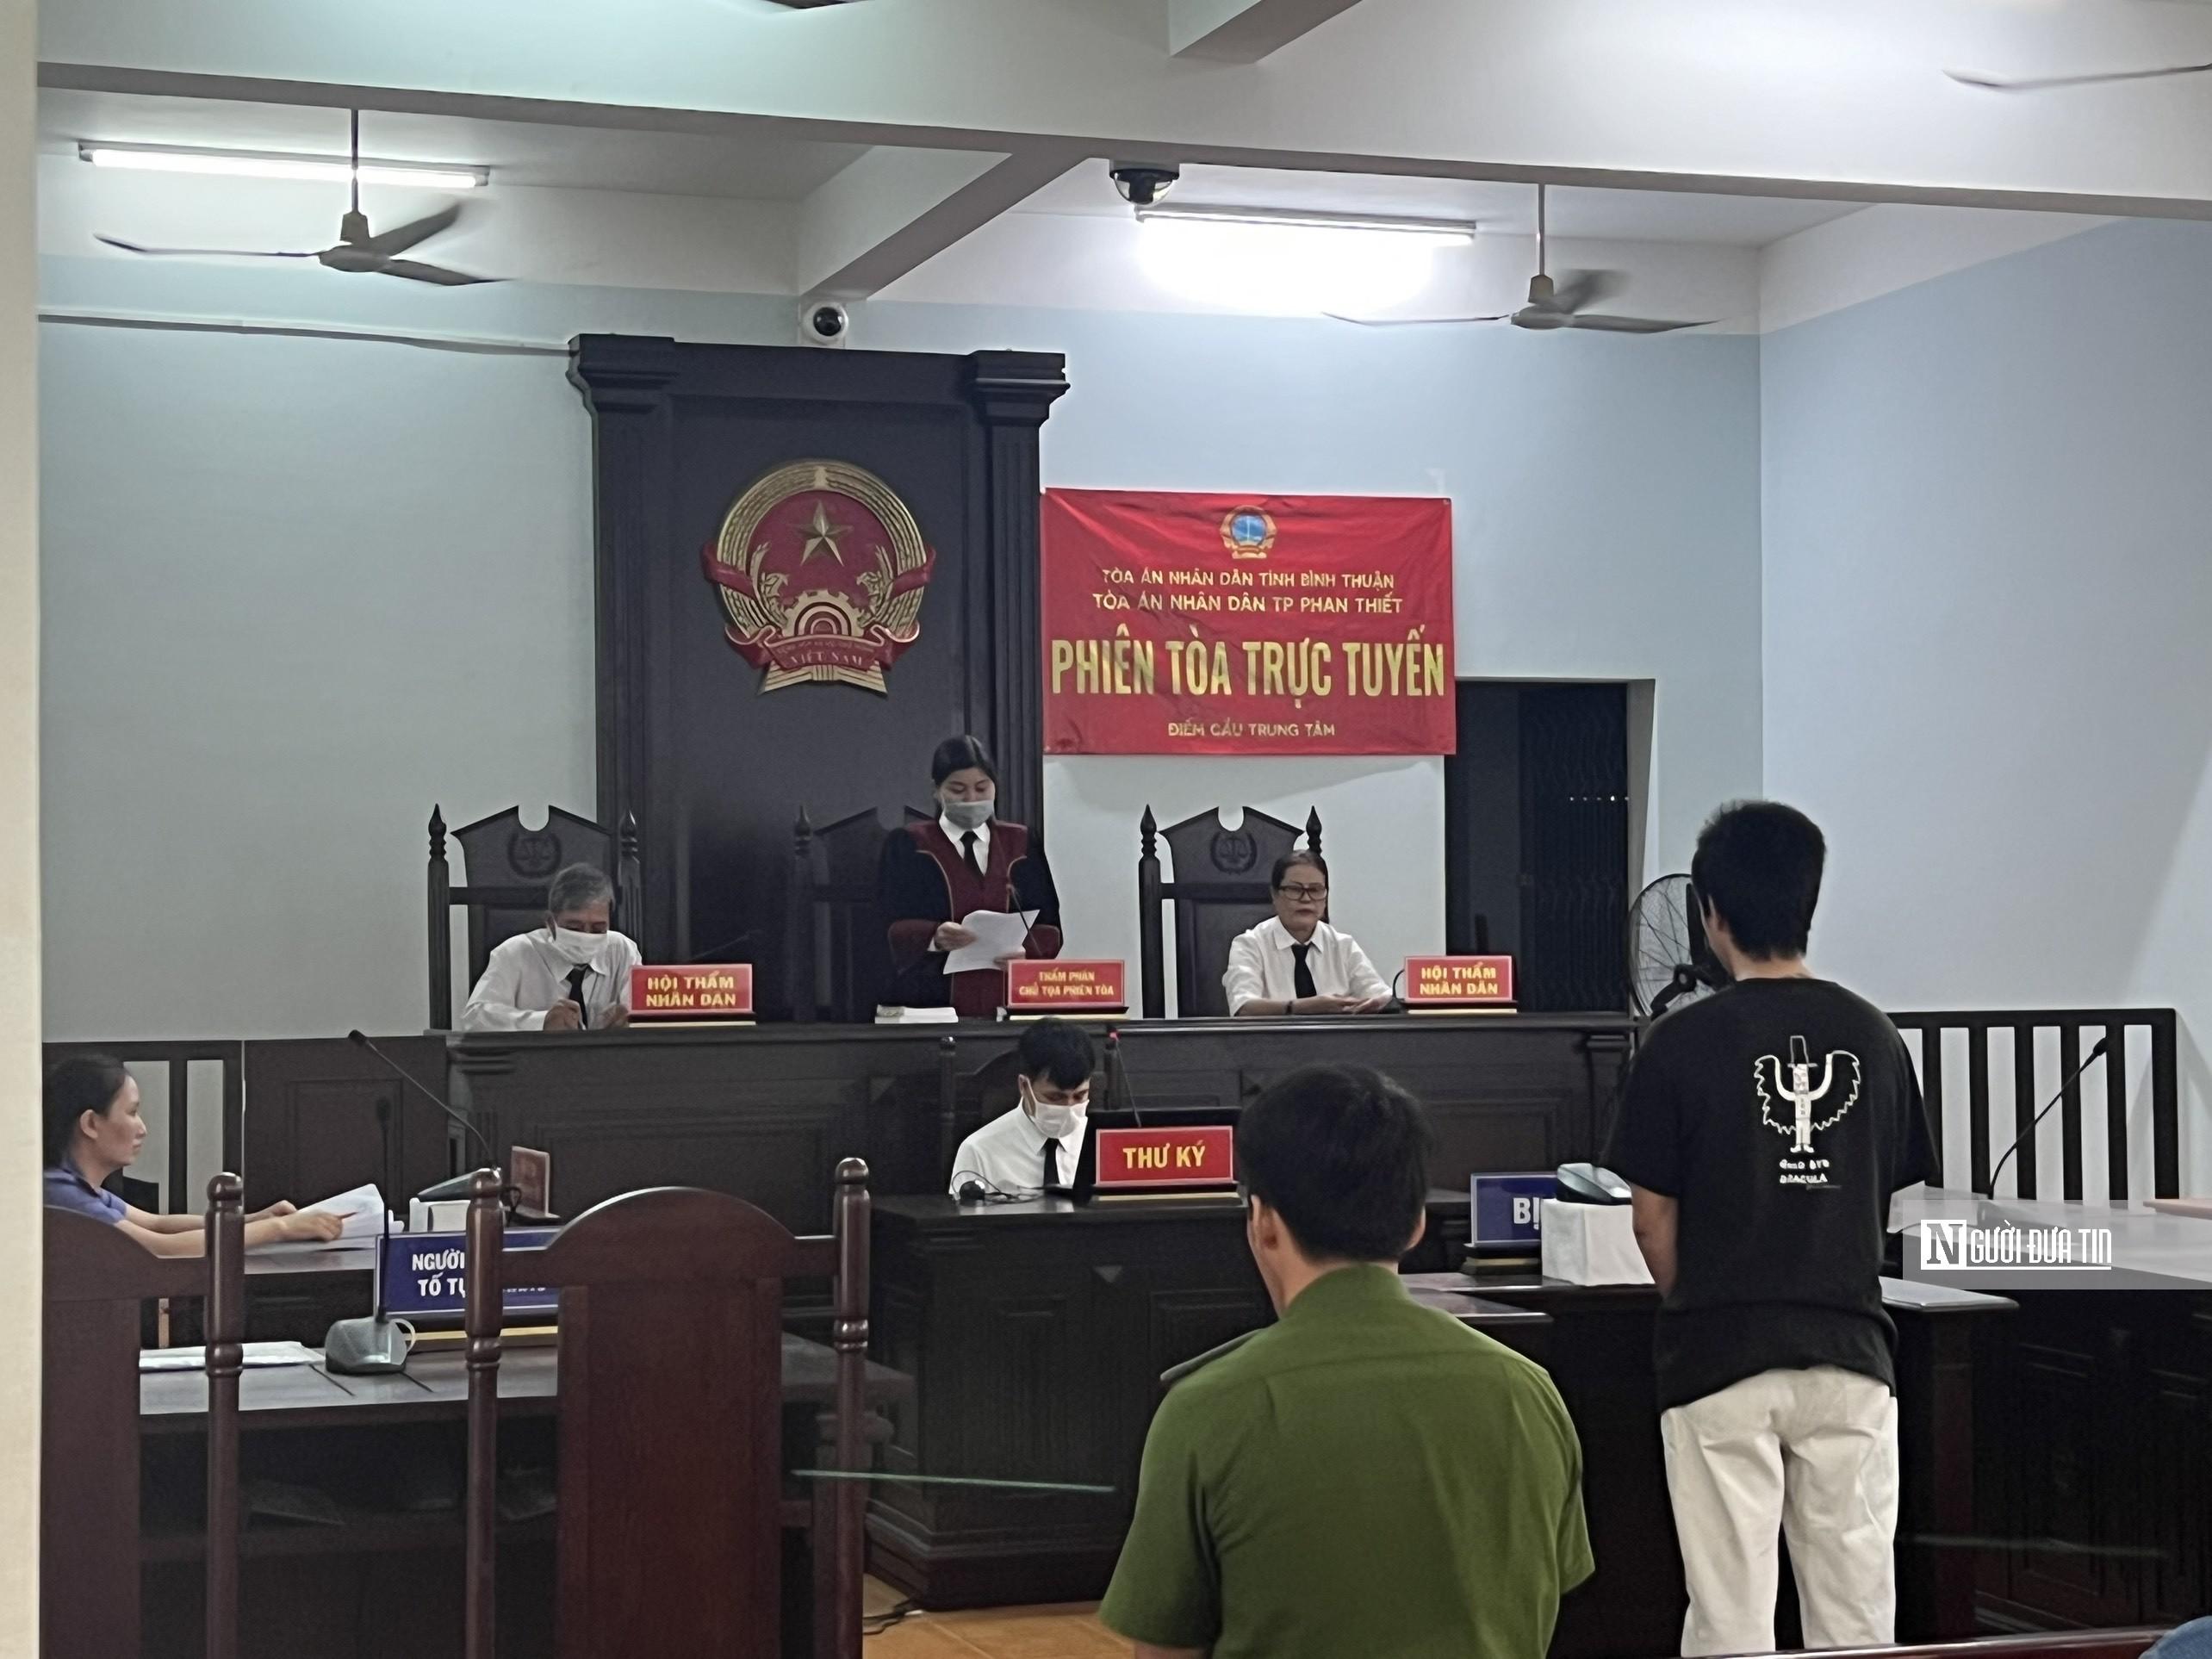 Bình Thuận: Kẻ cướp giật túi xách của người đi bộ lãnh án - ảnh 1